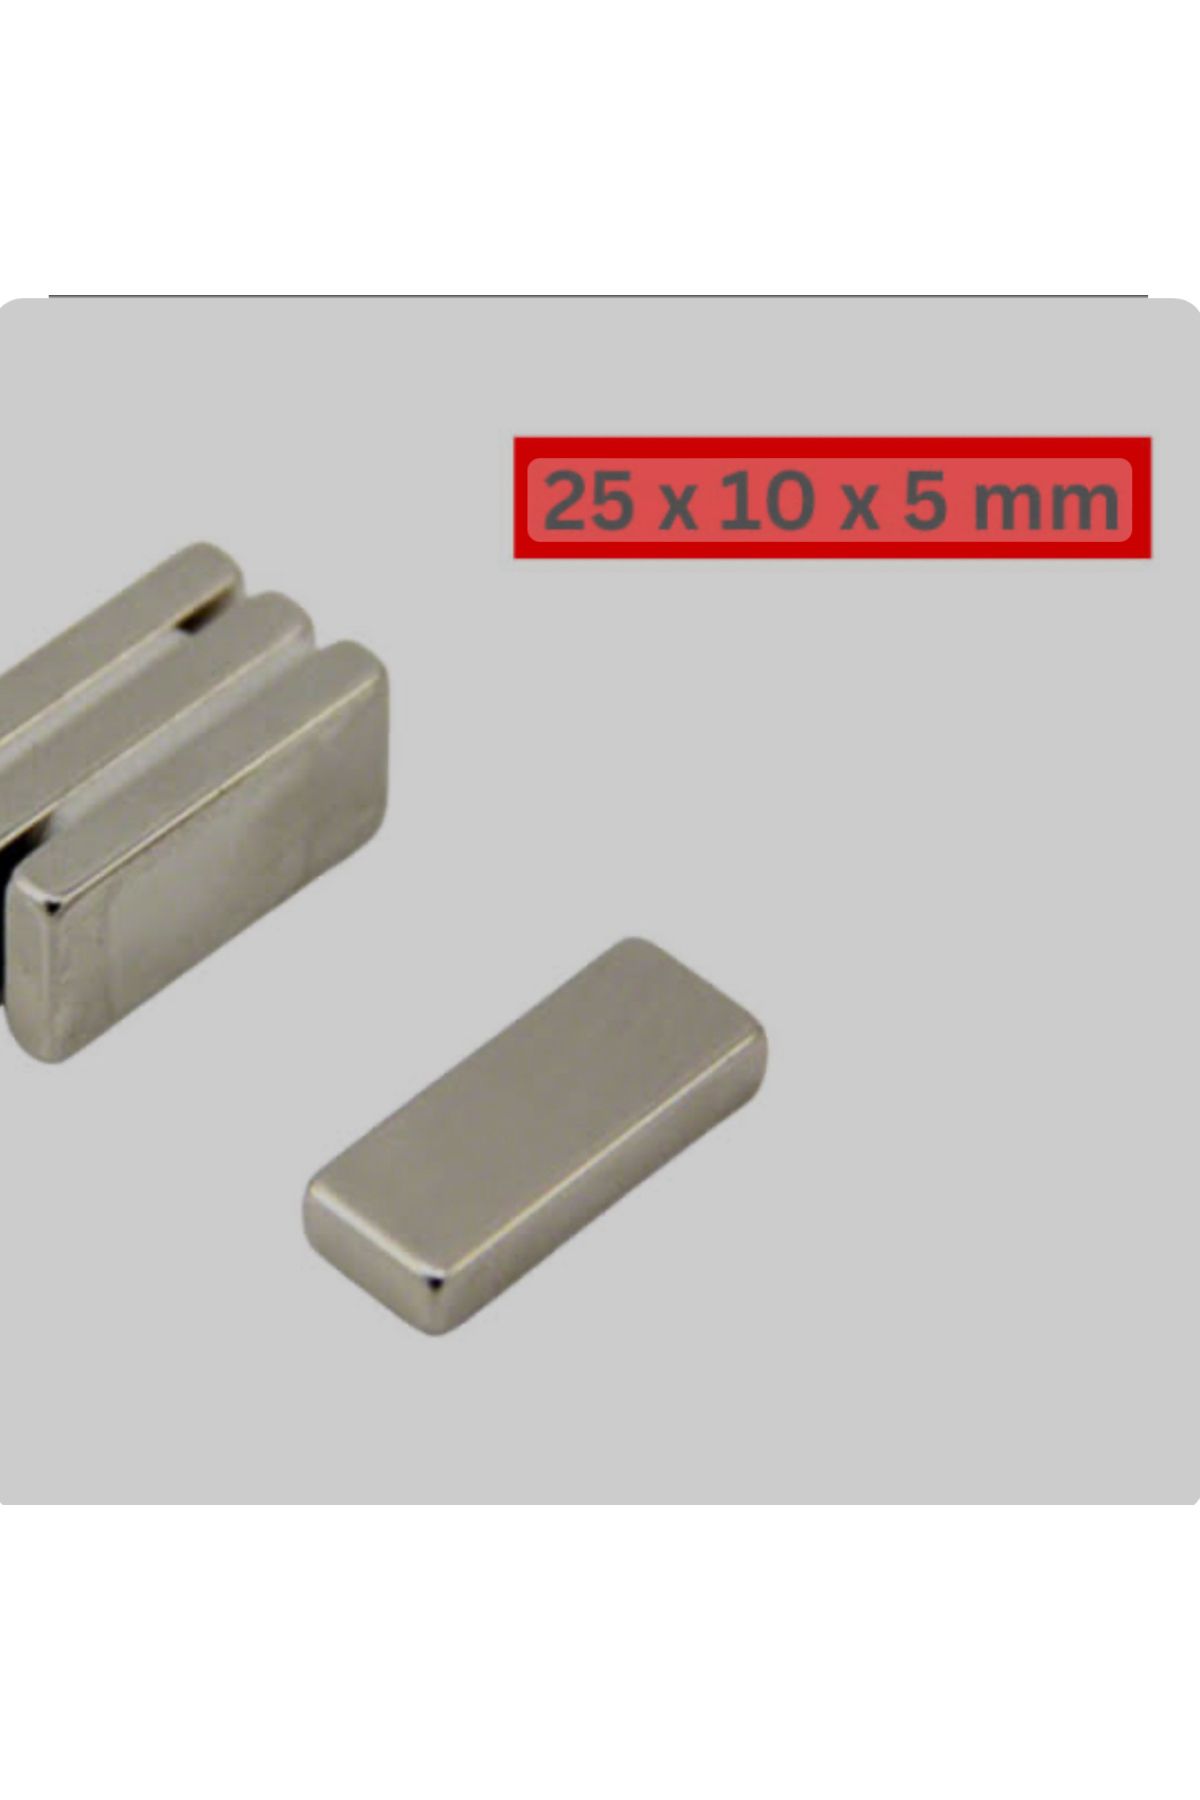 magnet market - 30 Adet - 25x10x5 - Boy 25mm X En 10mm X Kalınlık 5mm Neodymium Magnet